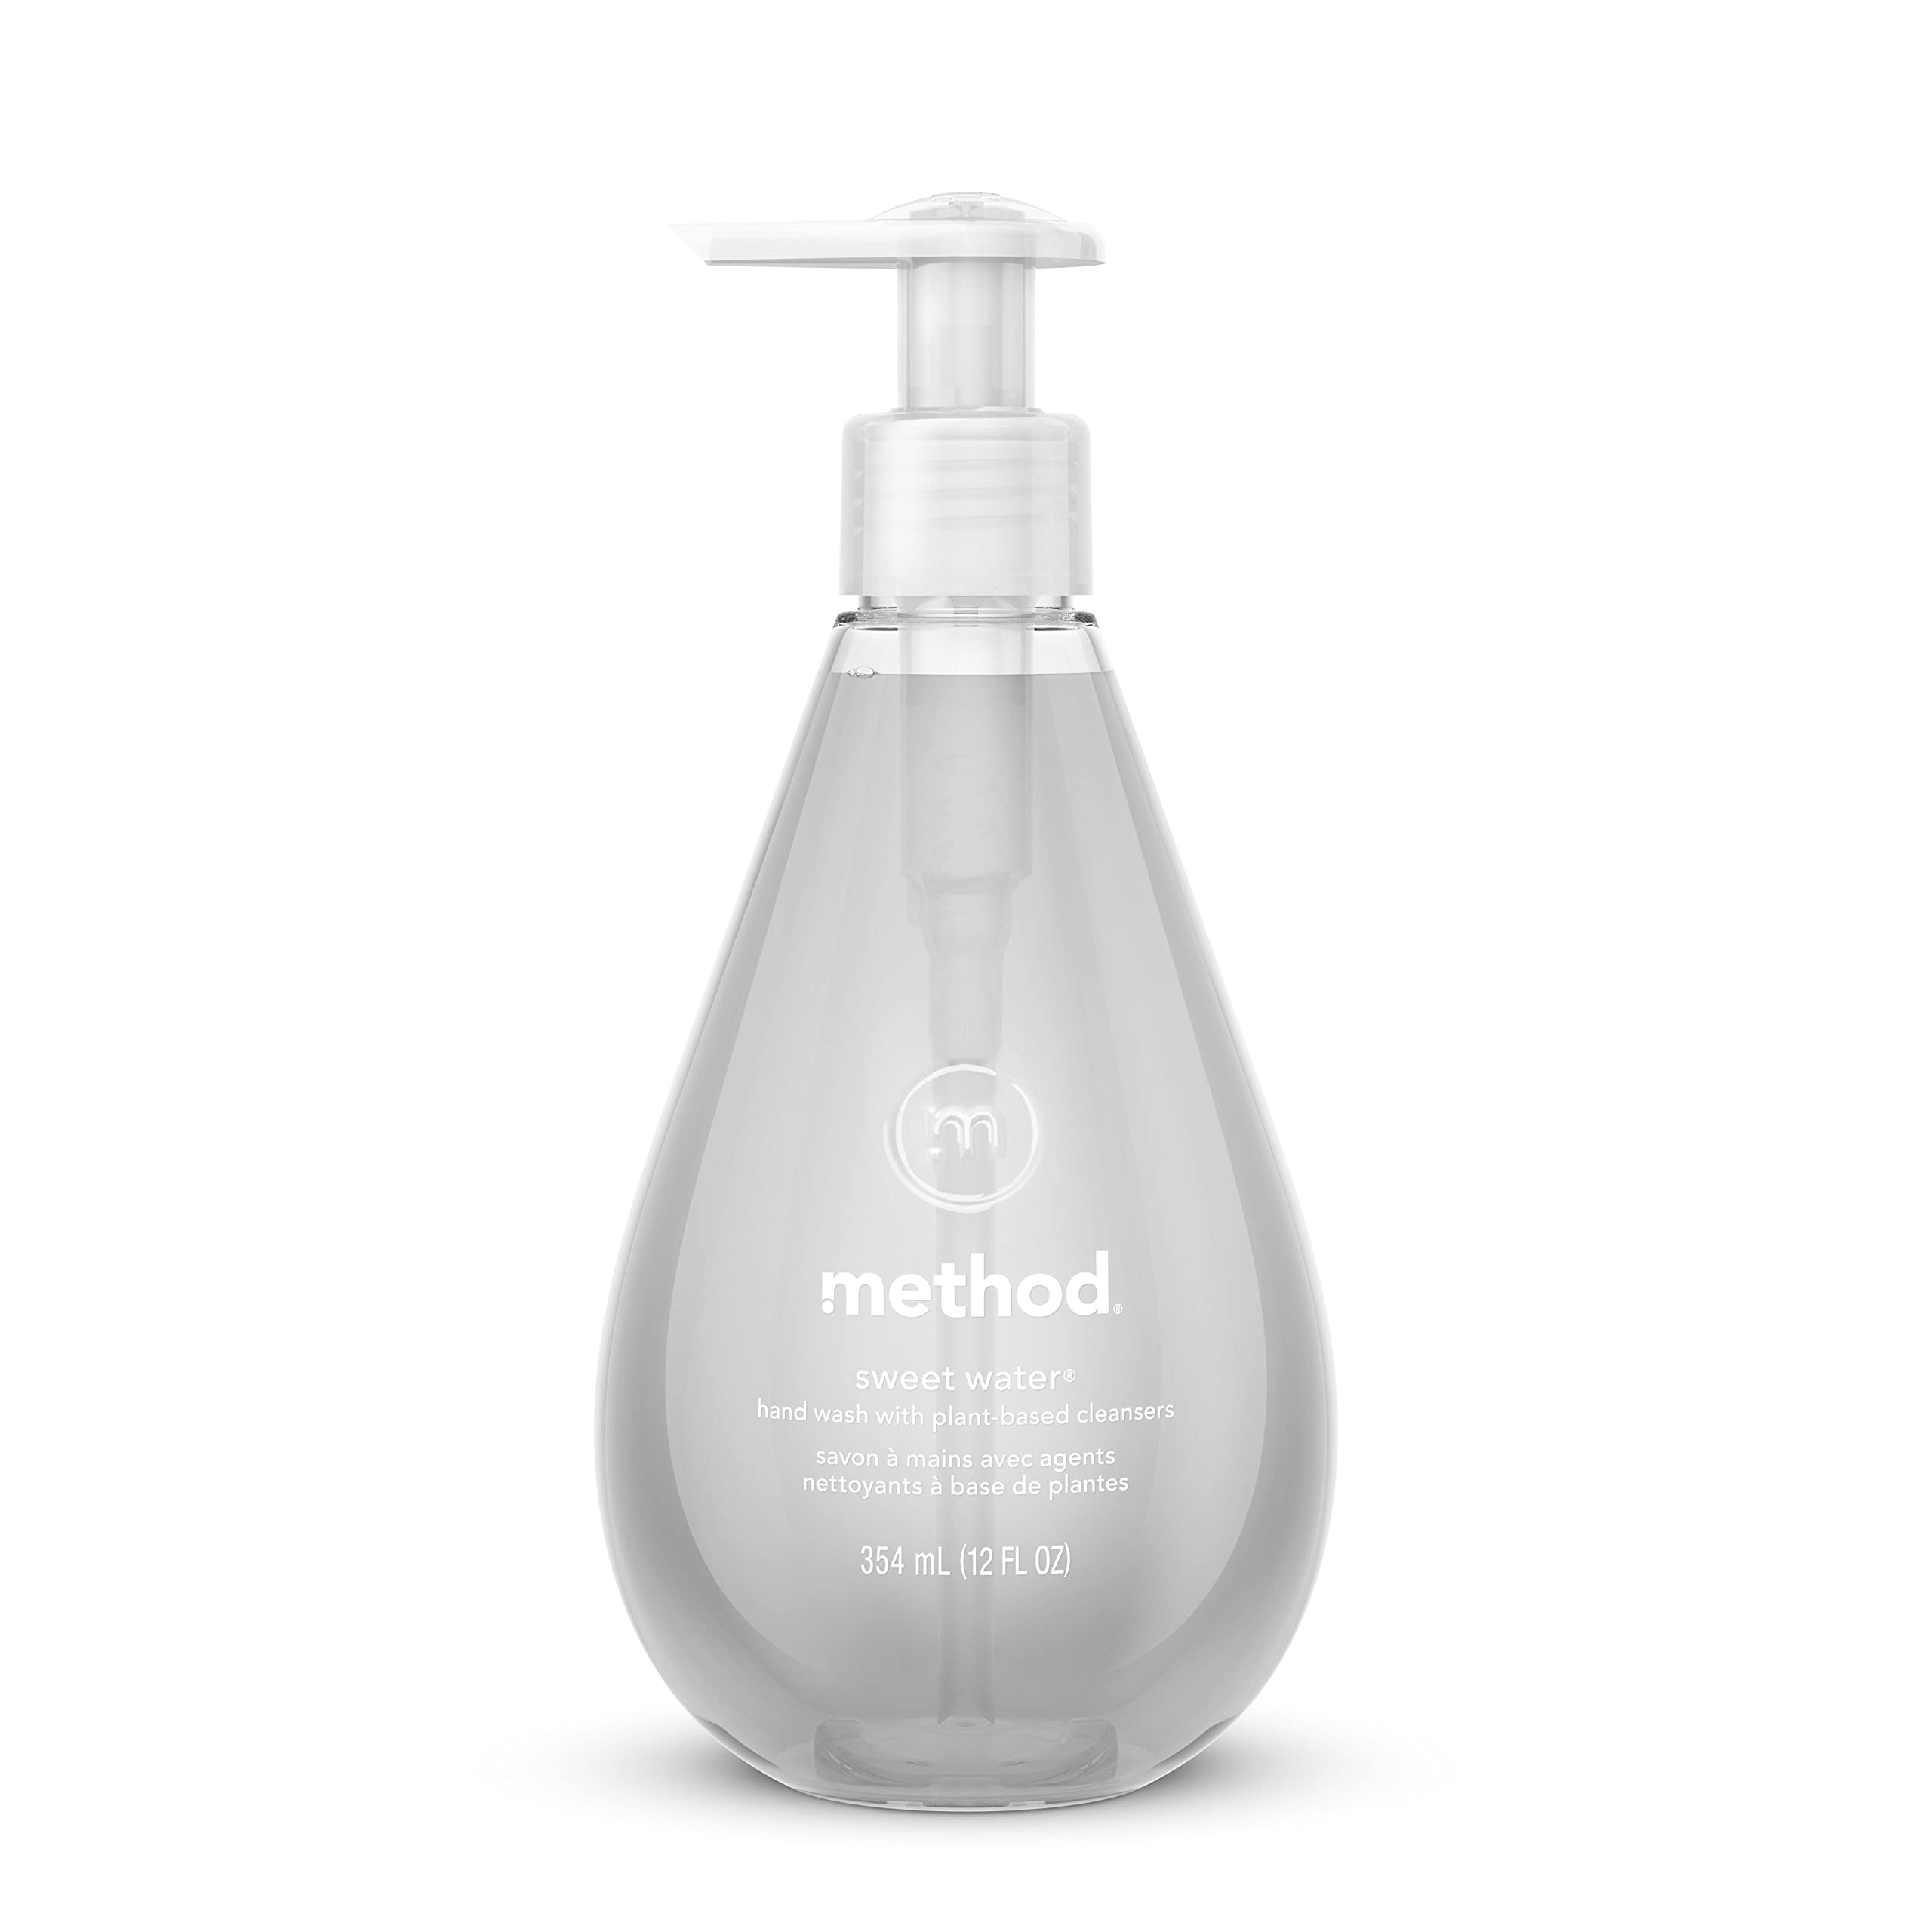 Method Gel Hand Soap, Sweet Water, 12 oz, 1 pack, Packaging May Vary